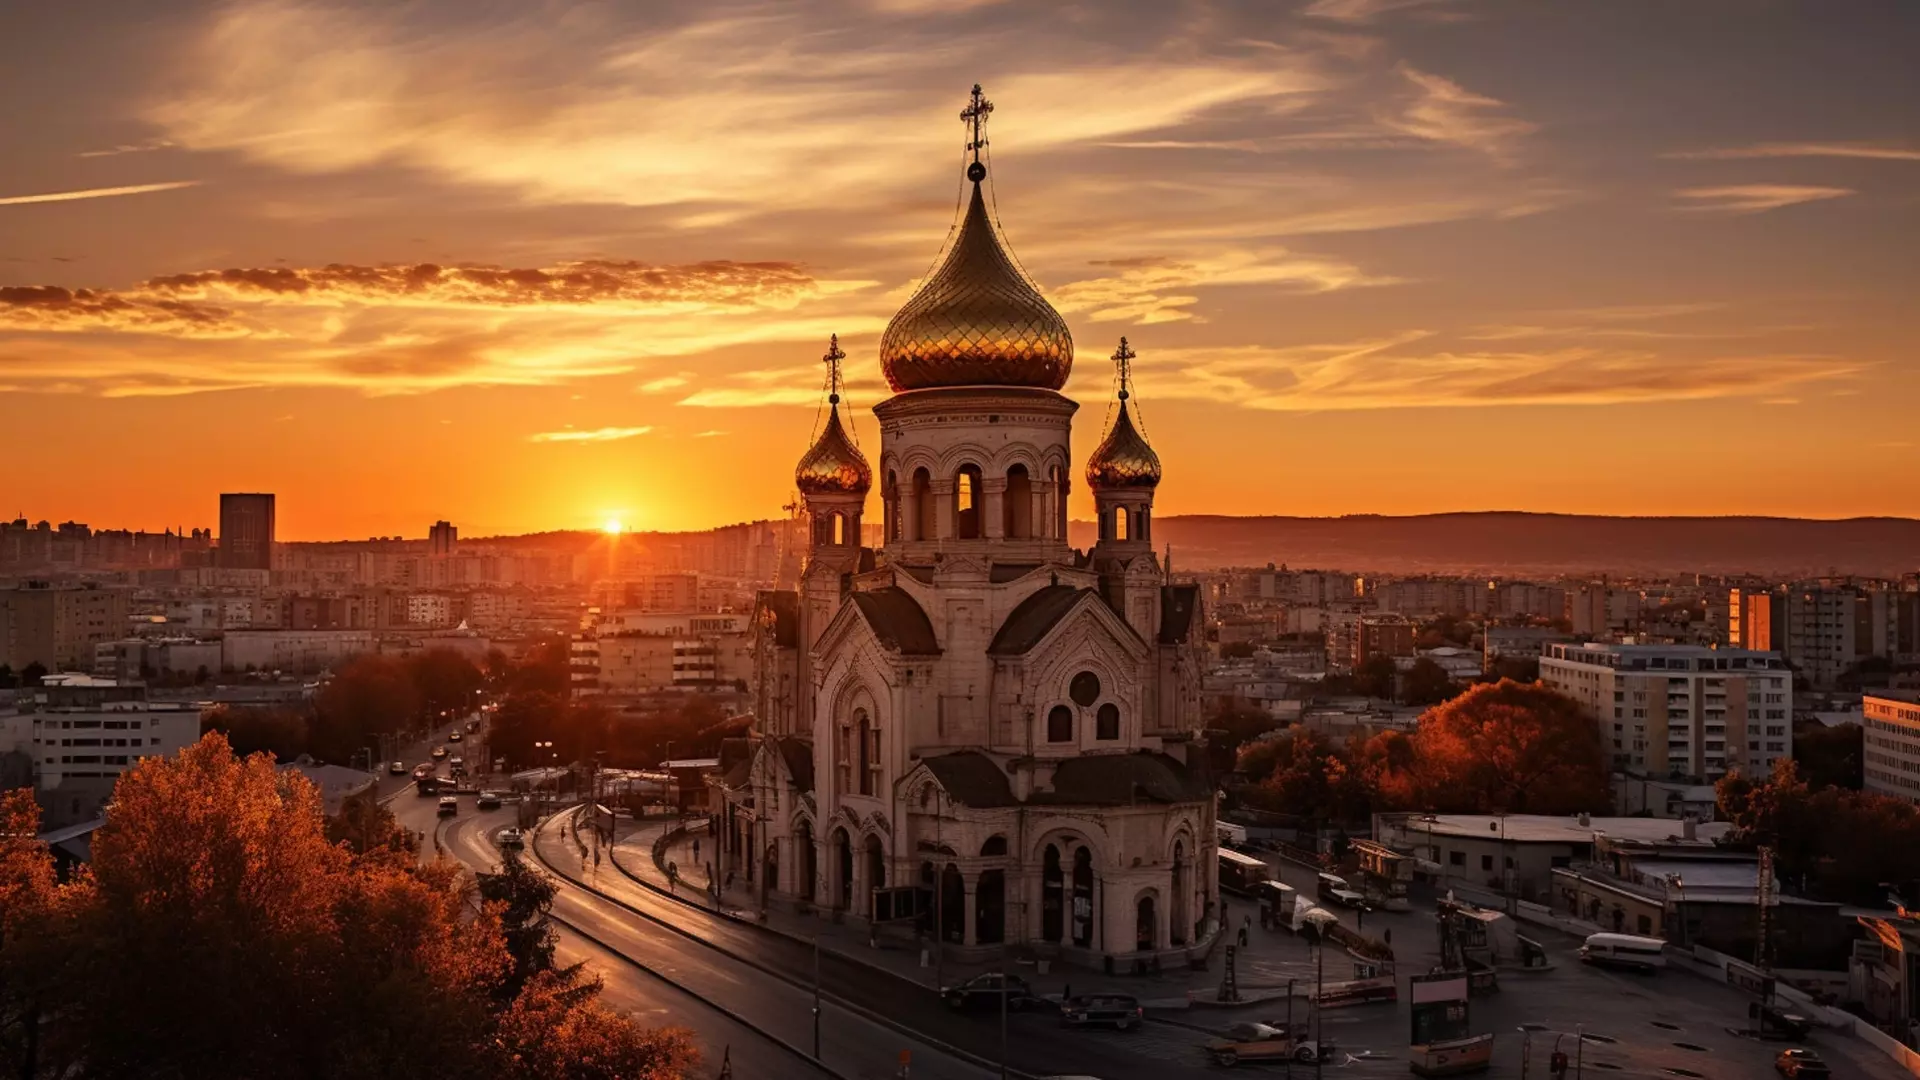 В этот день в православных храмах проводят праздничную литургию, иногда — крестный ход